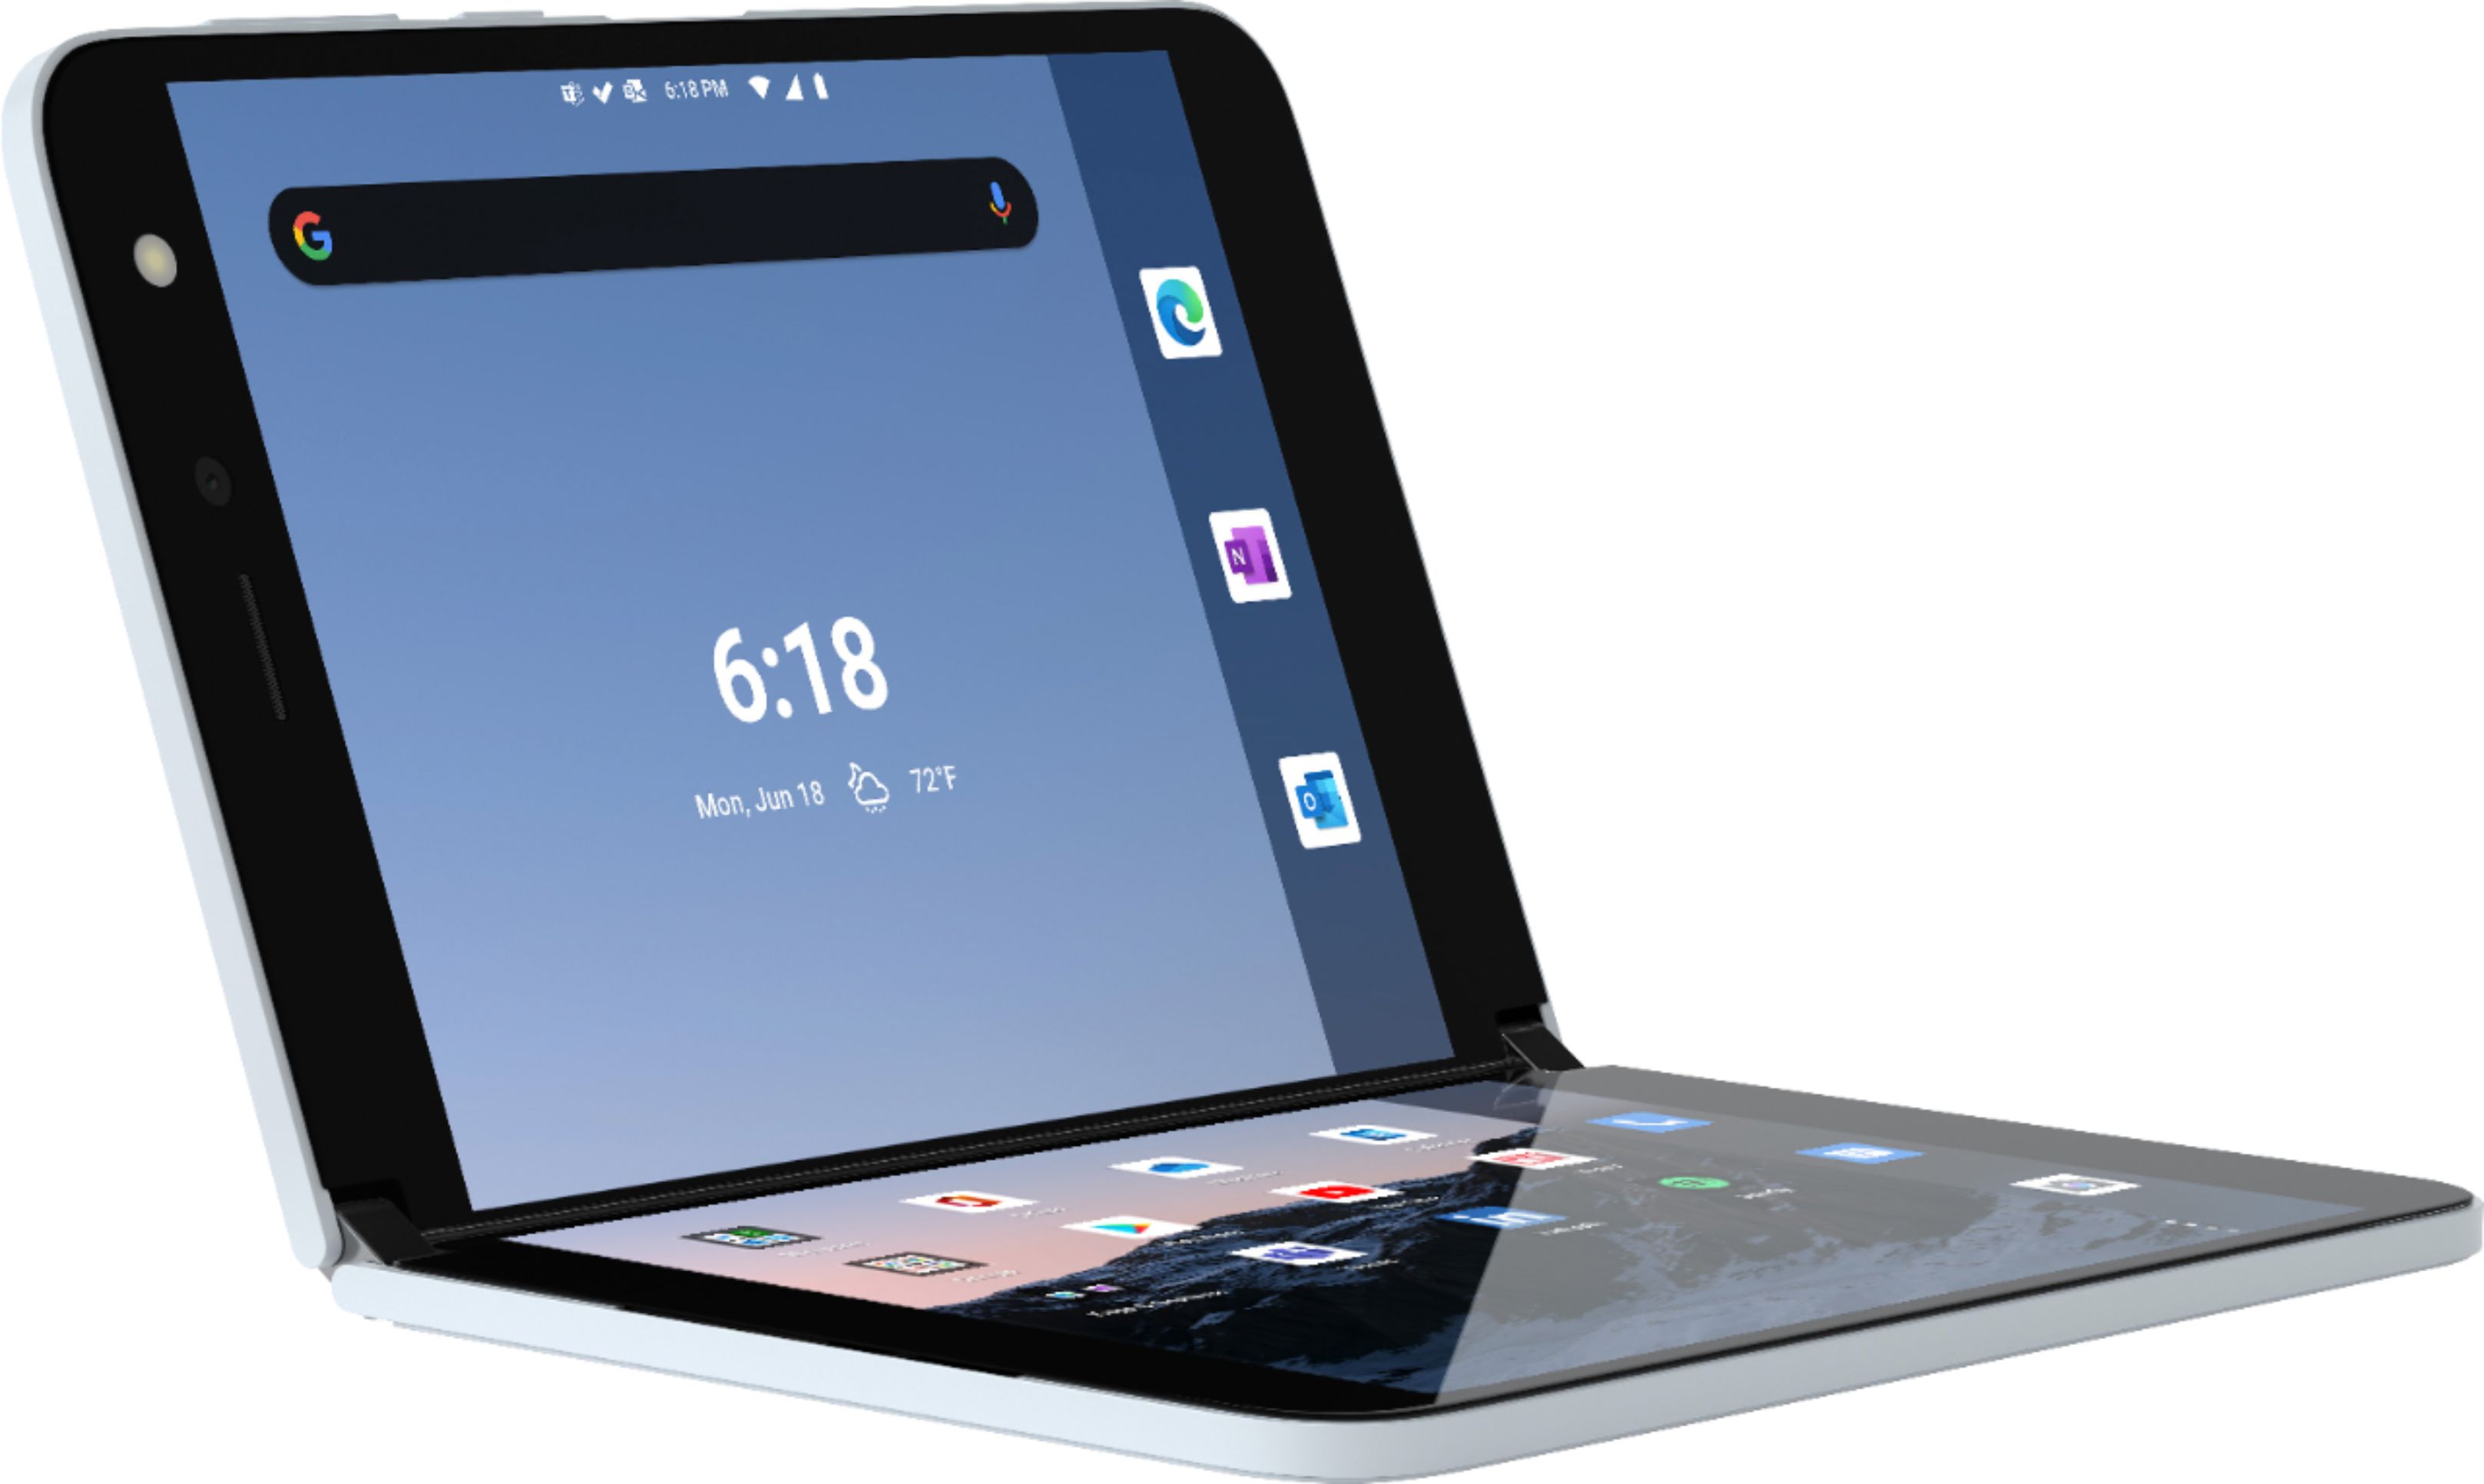 送料込みライン Microsoft Surface 128GB版 Duo スマートフォン本体